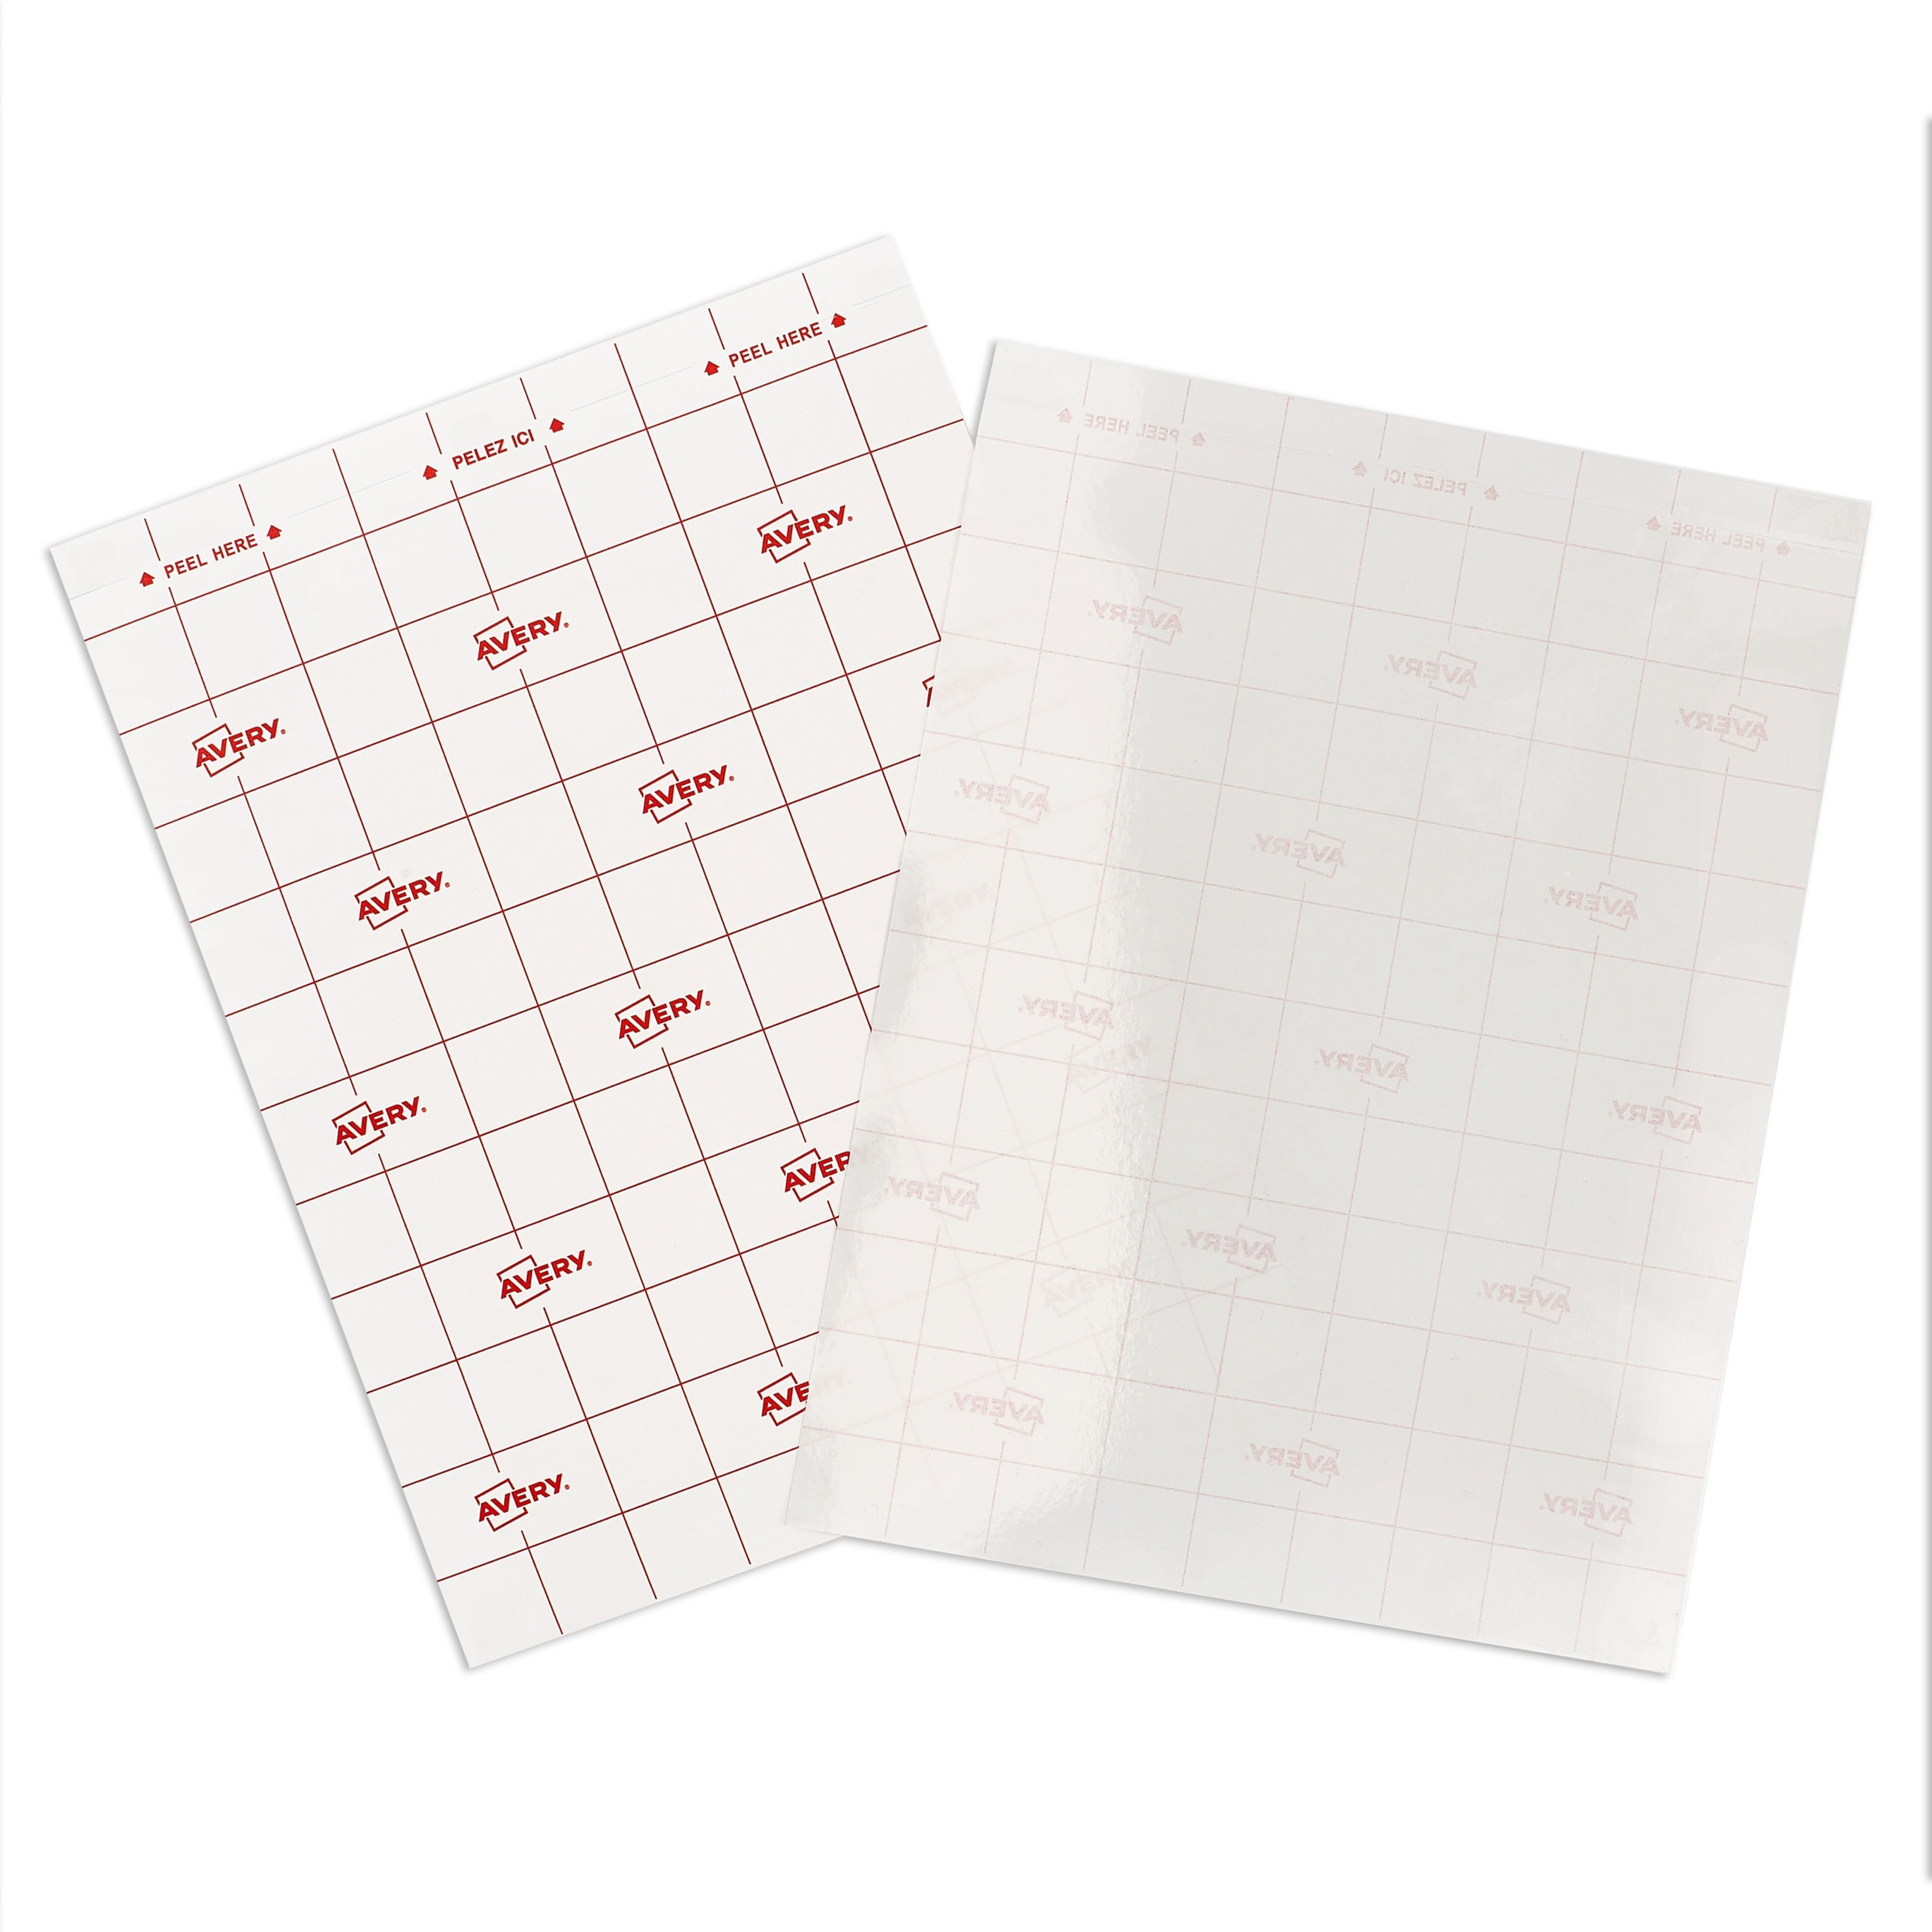 Avery Self-Adhesive Laminating Sheets, 9 x 12, Permanent Adhesive, 10 Clear  Laminating Sheets (73603) 